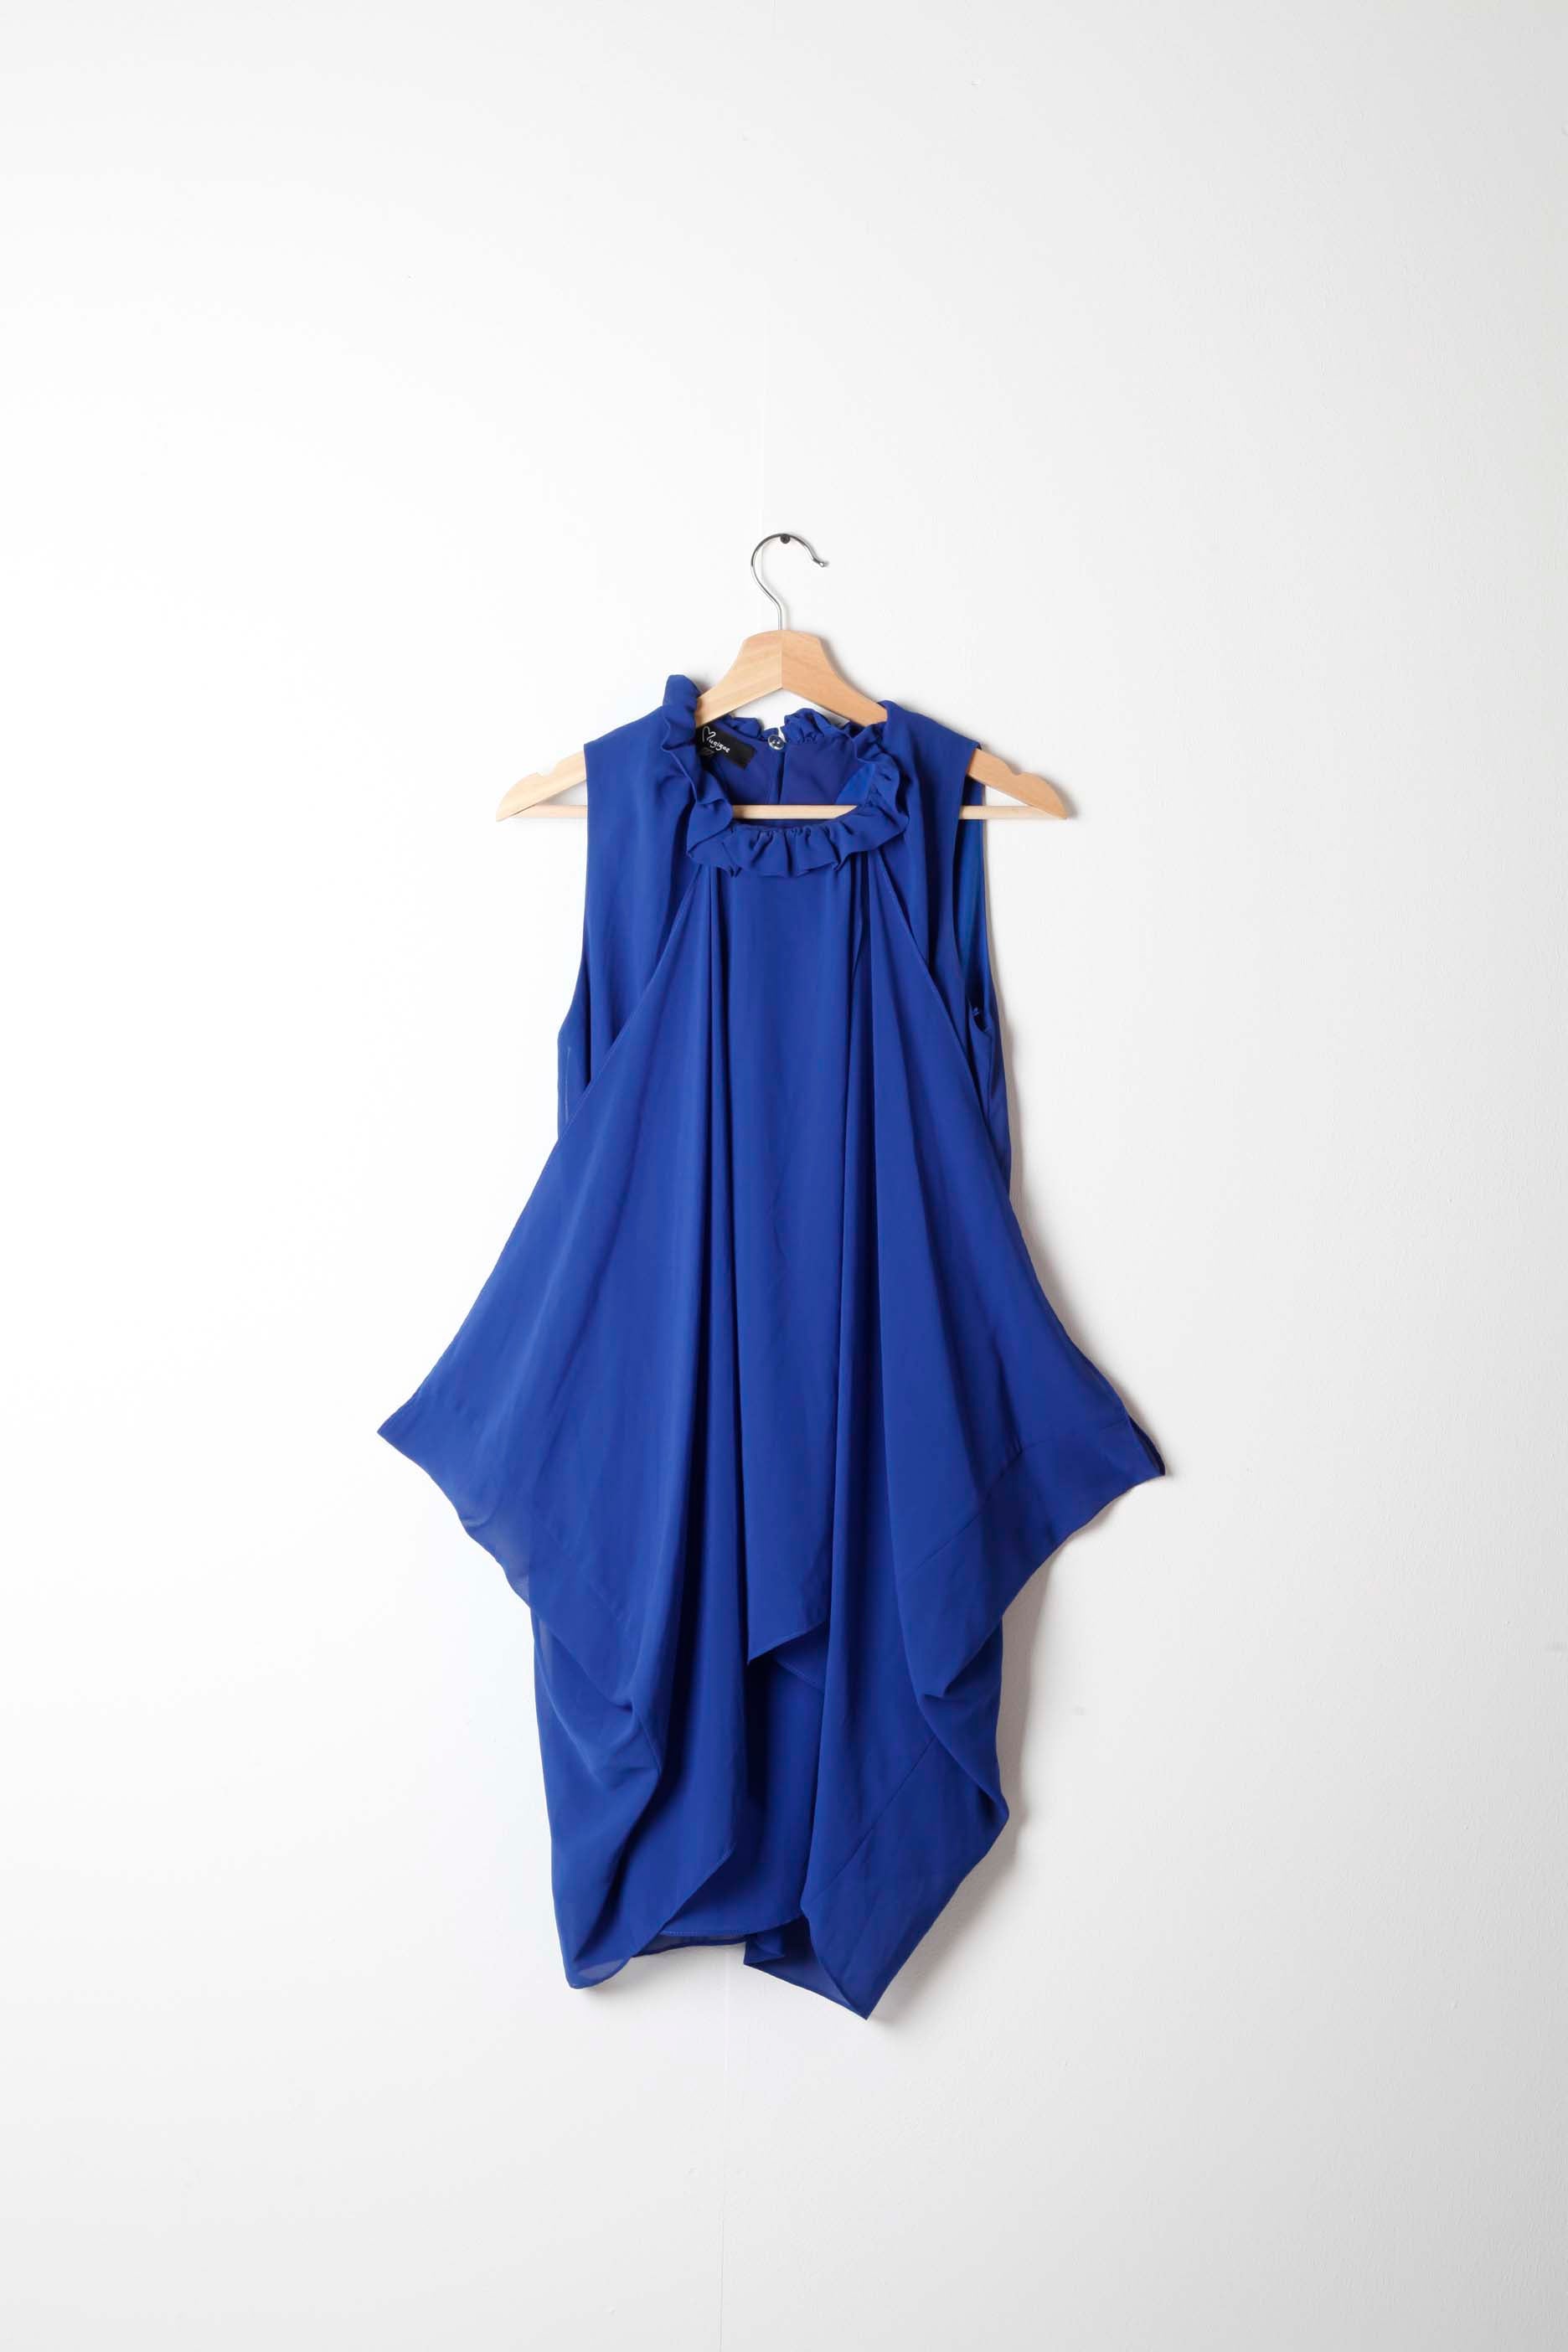 Draped Blue Dress (Eu38)